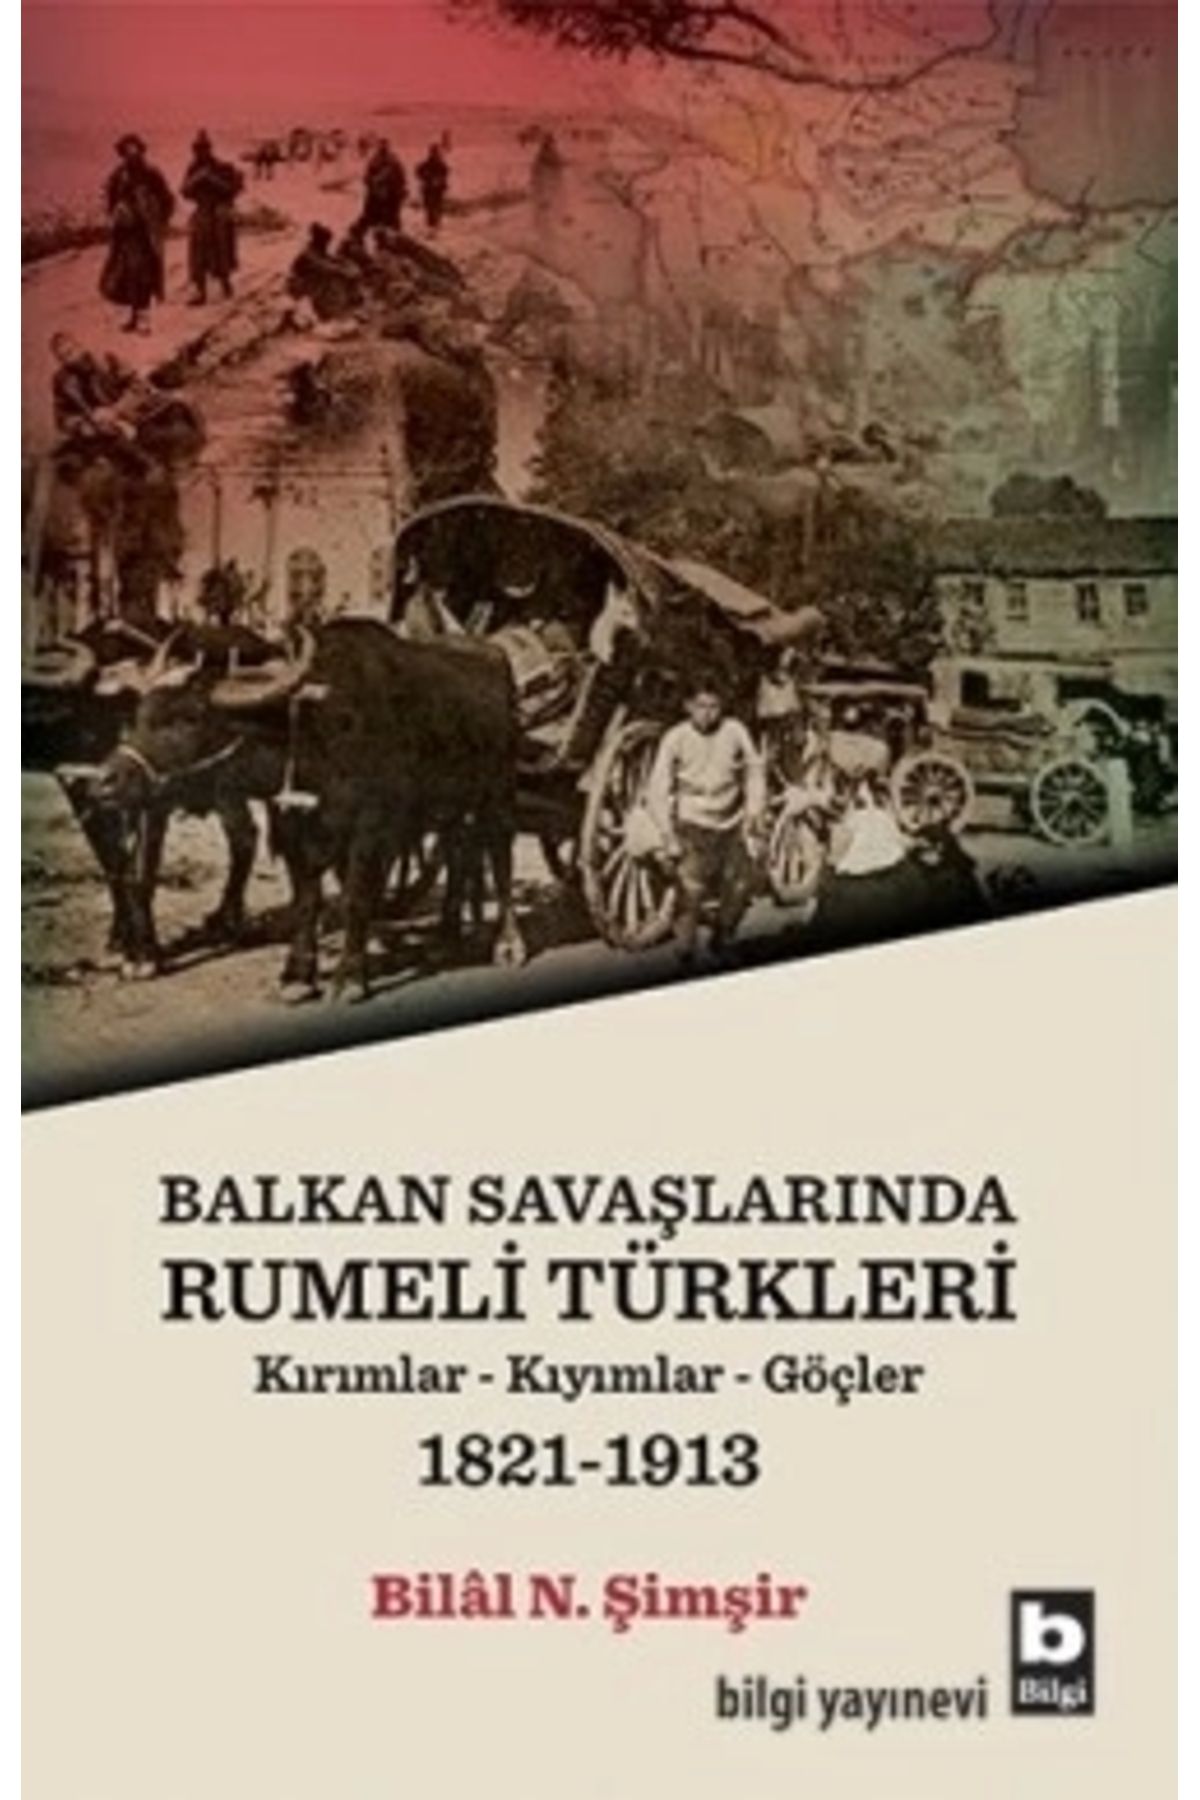 Bilgi Yayınları Balkan Savaşlarında Rumeli Türkleri (kırımllar-kıyımlar-göçler) 1821-1913 - Bilâl N. Şimşir - Bilgi